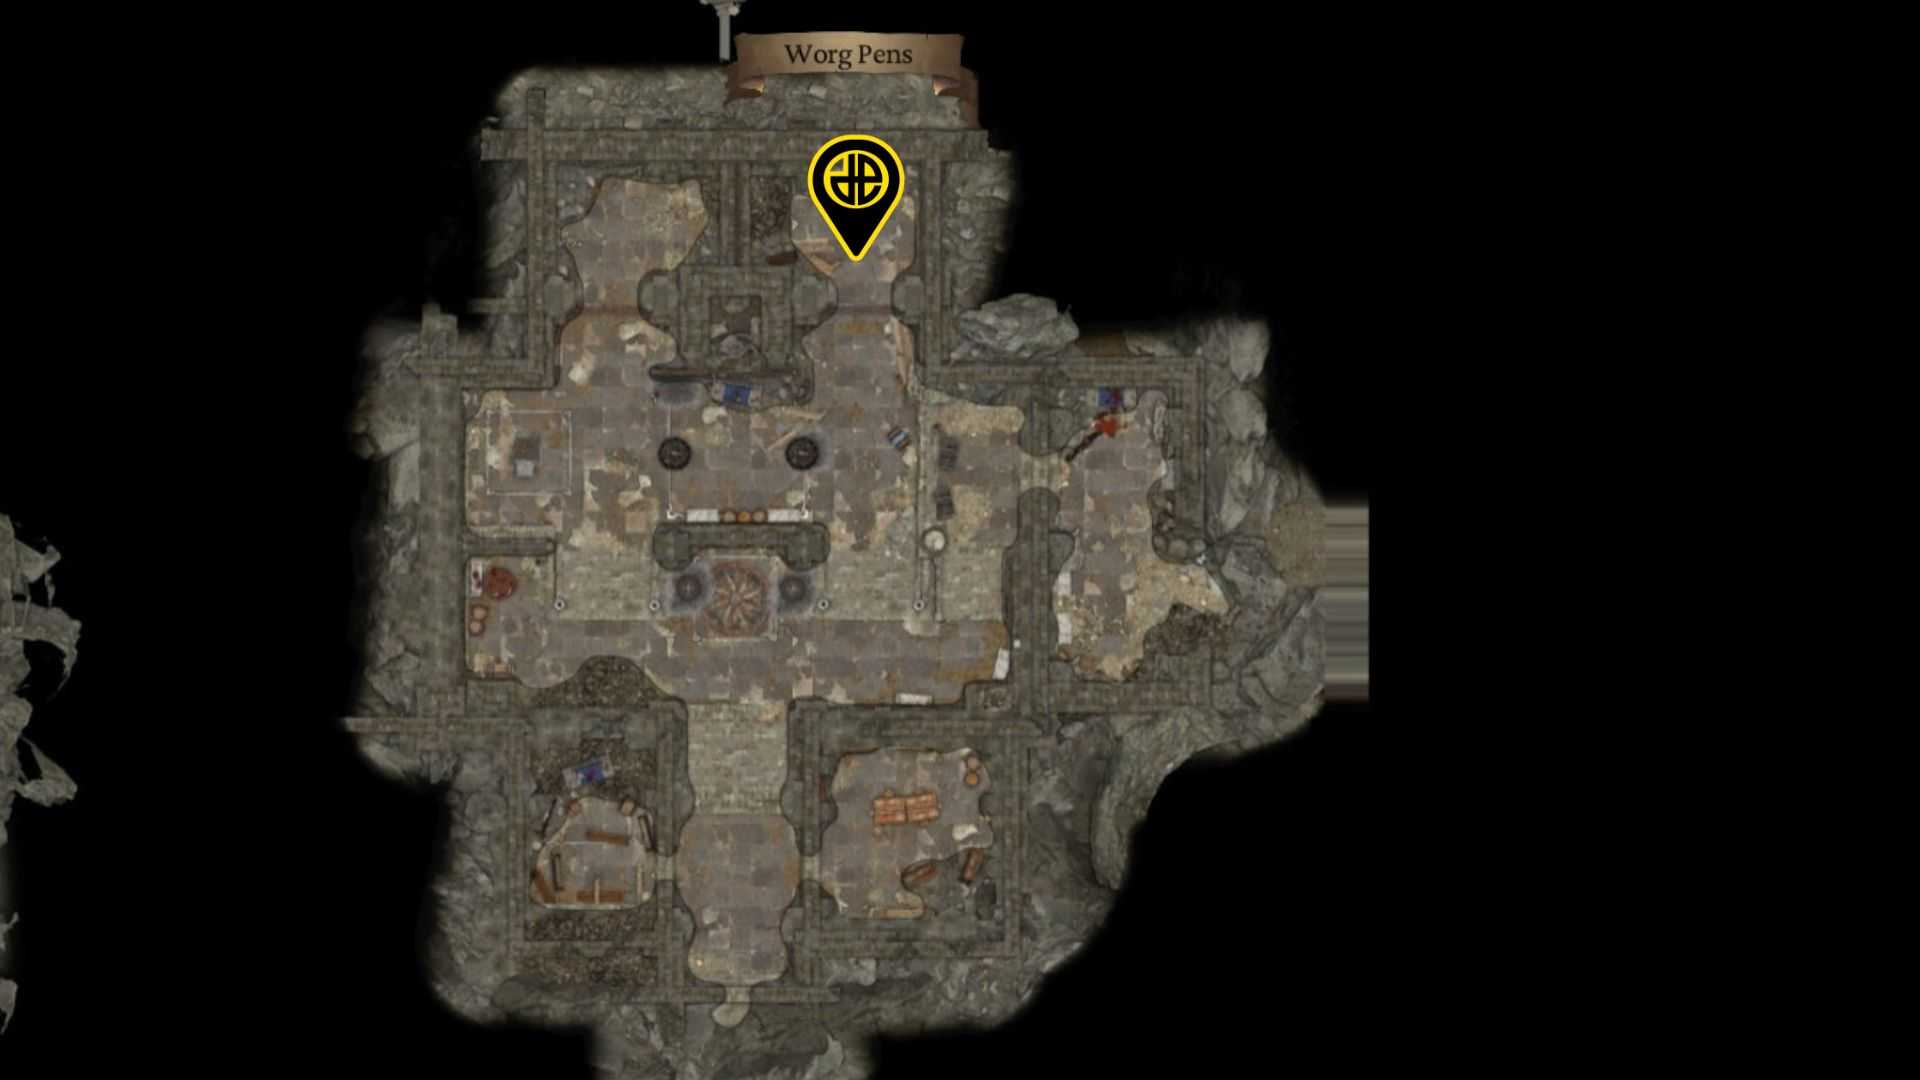 Halsin location in Baldur's Gate 3